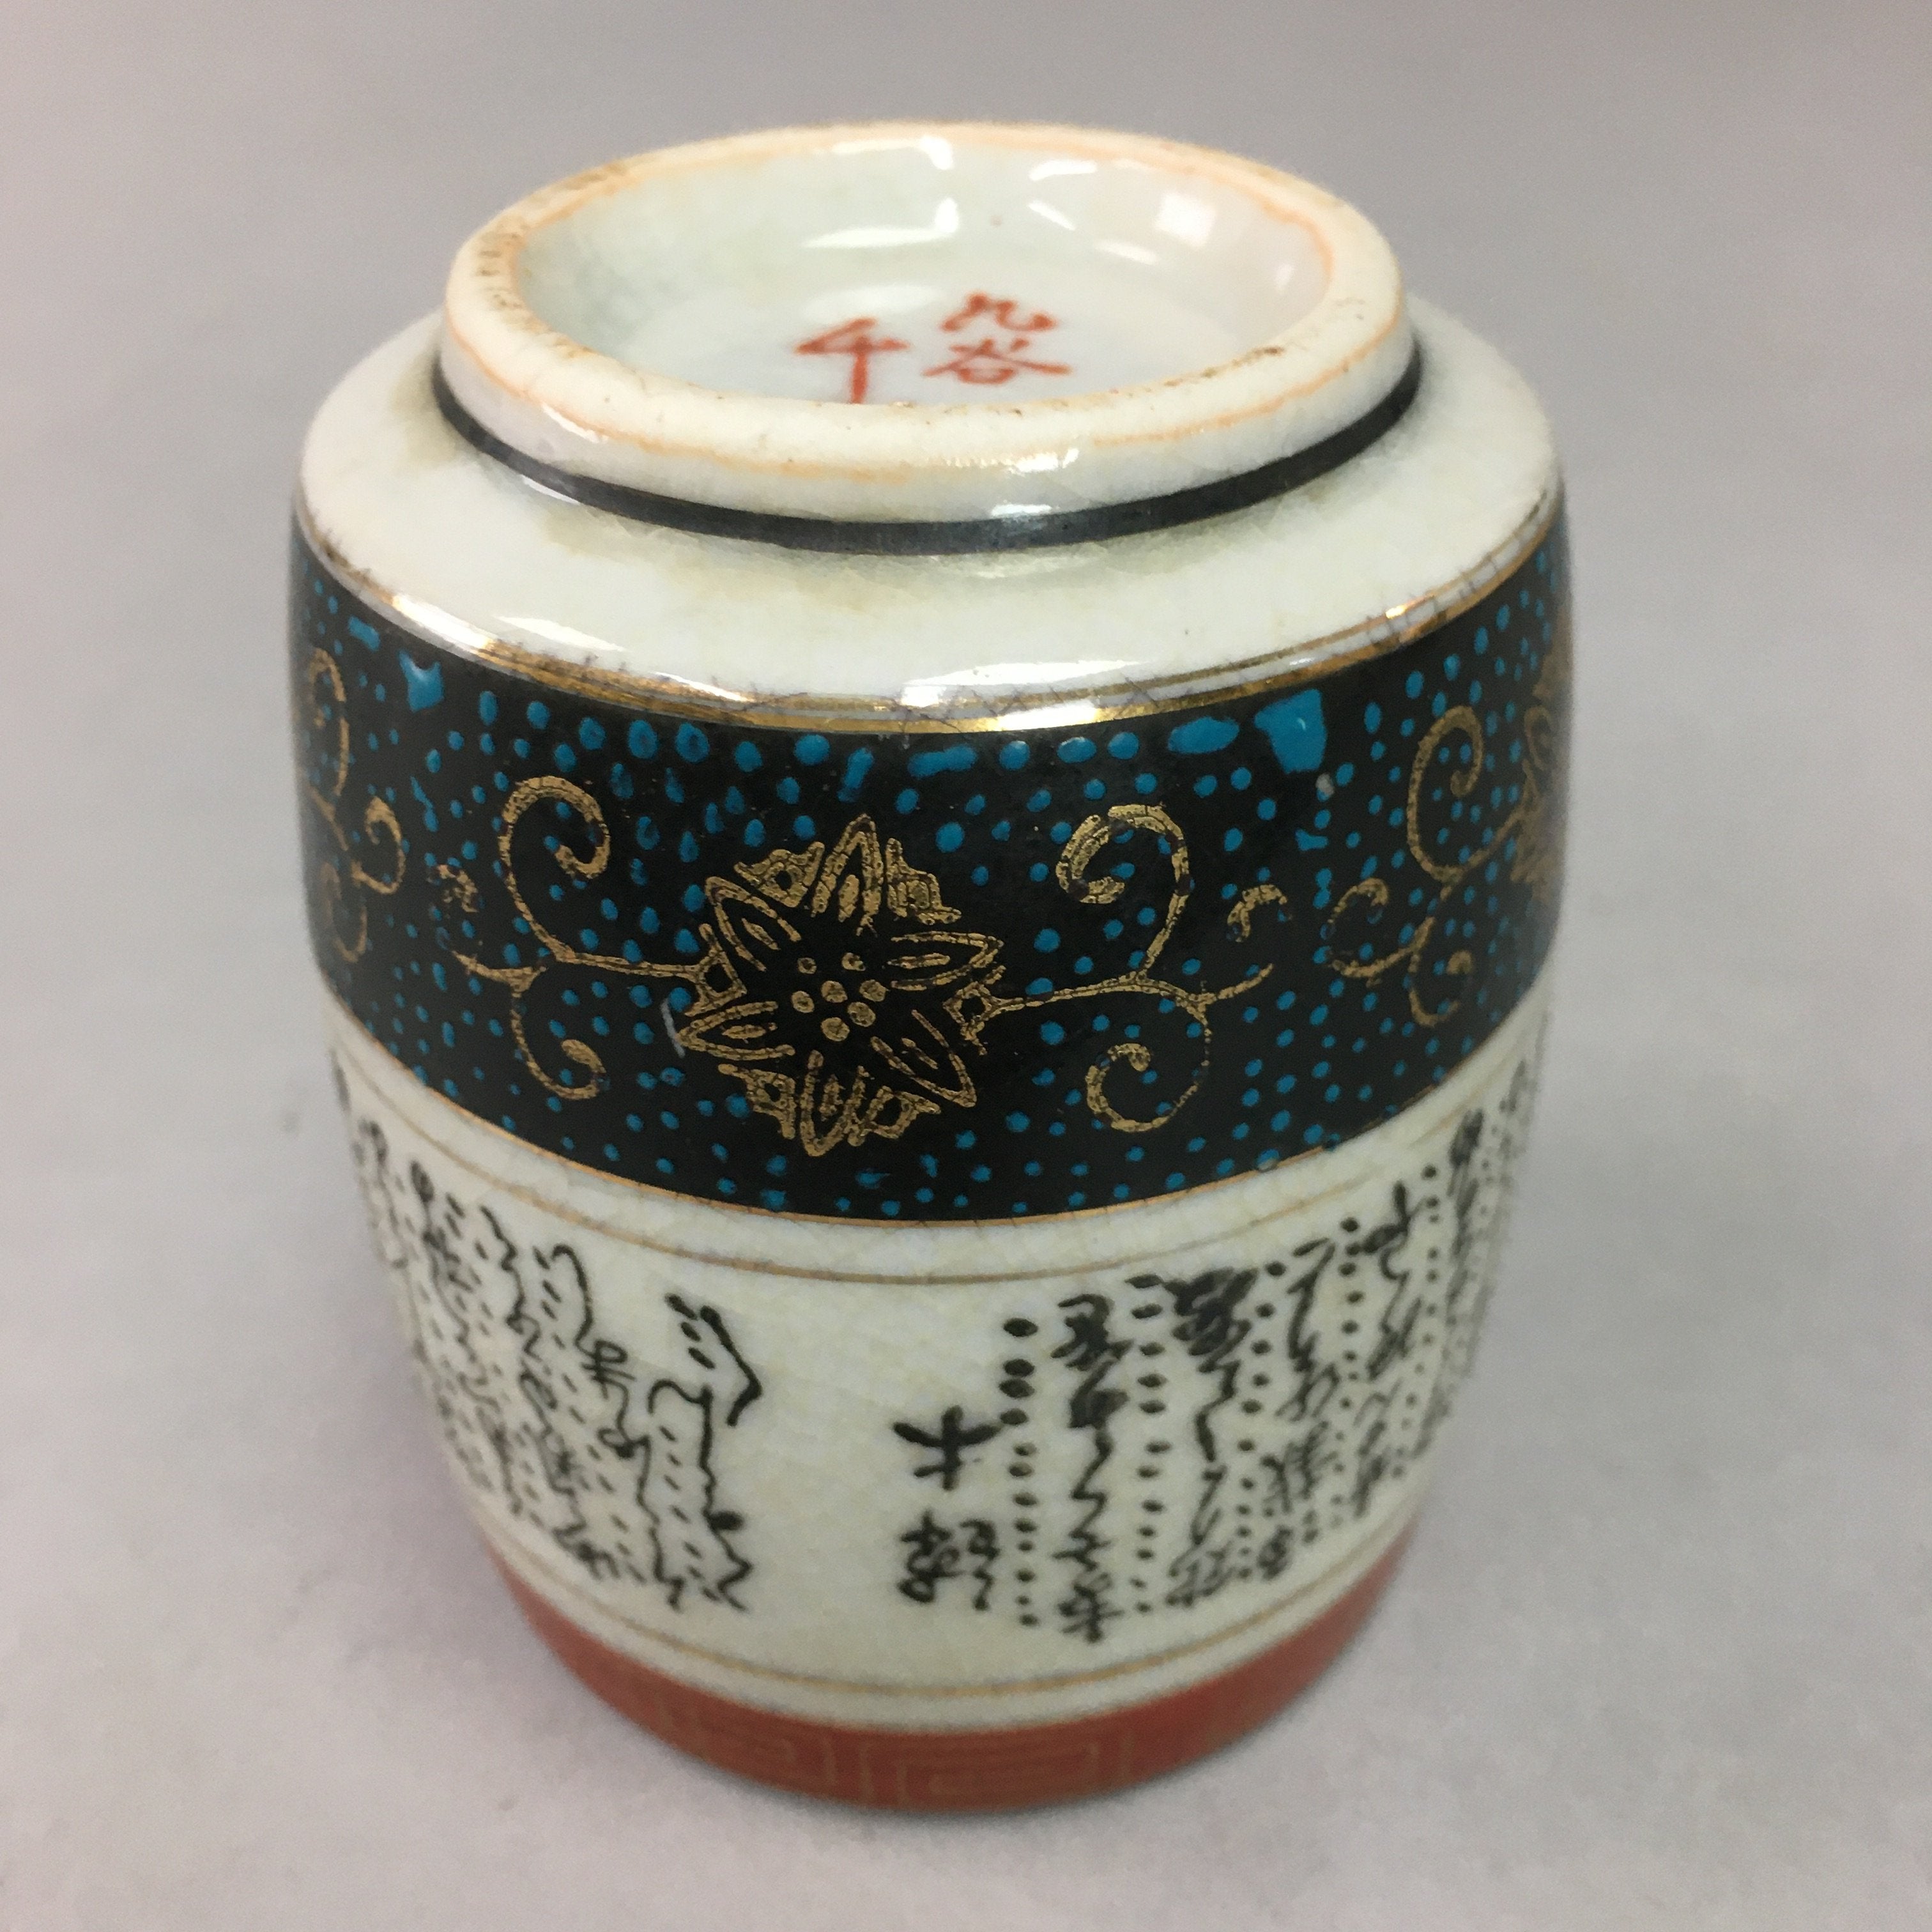 Japanese Ceramic Teacup Kutani ware Yunomi Vtg Pottery Sencha TC96